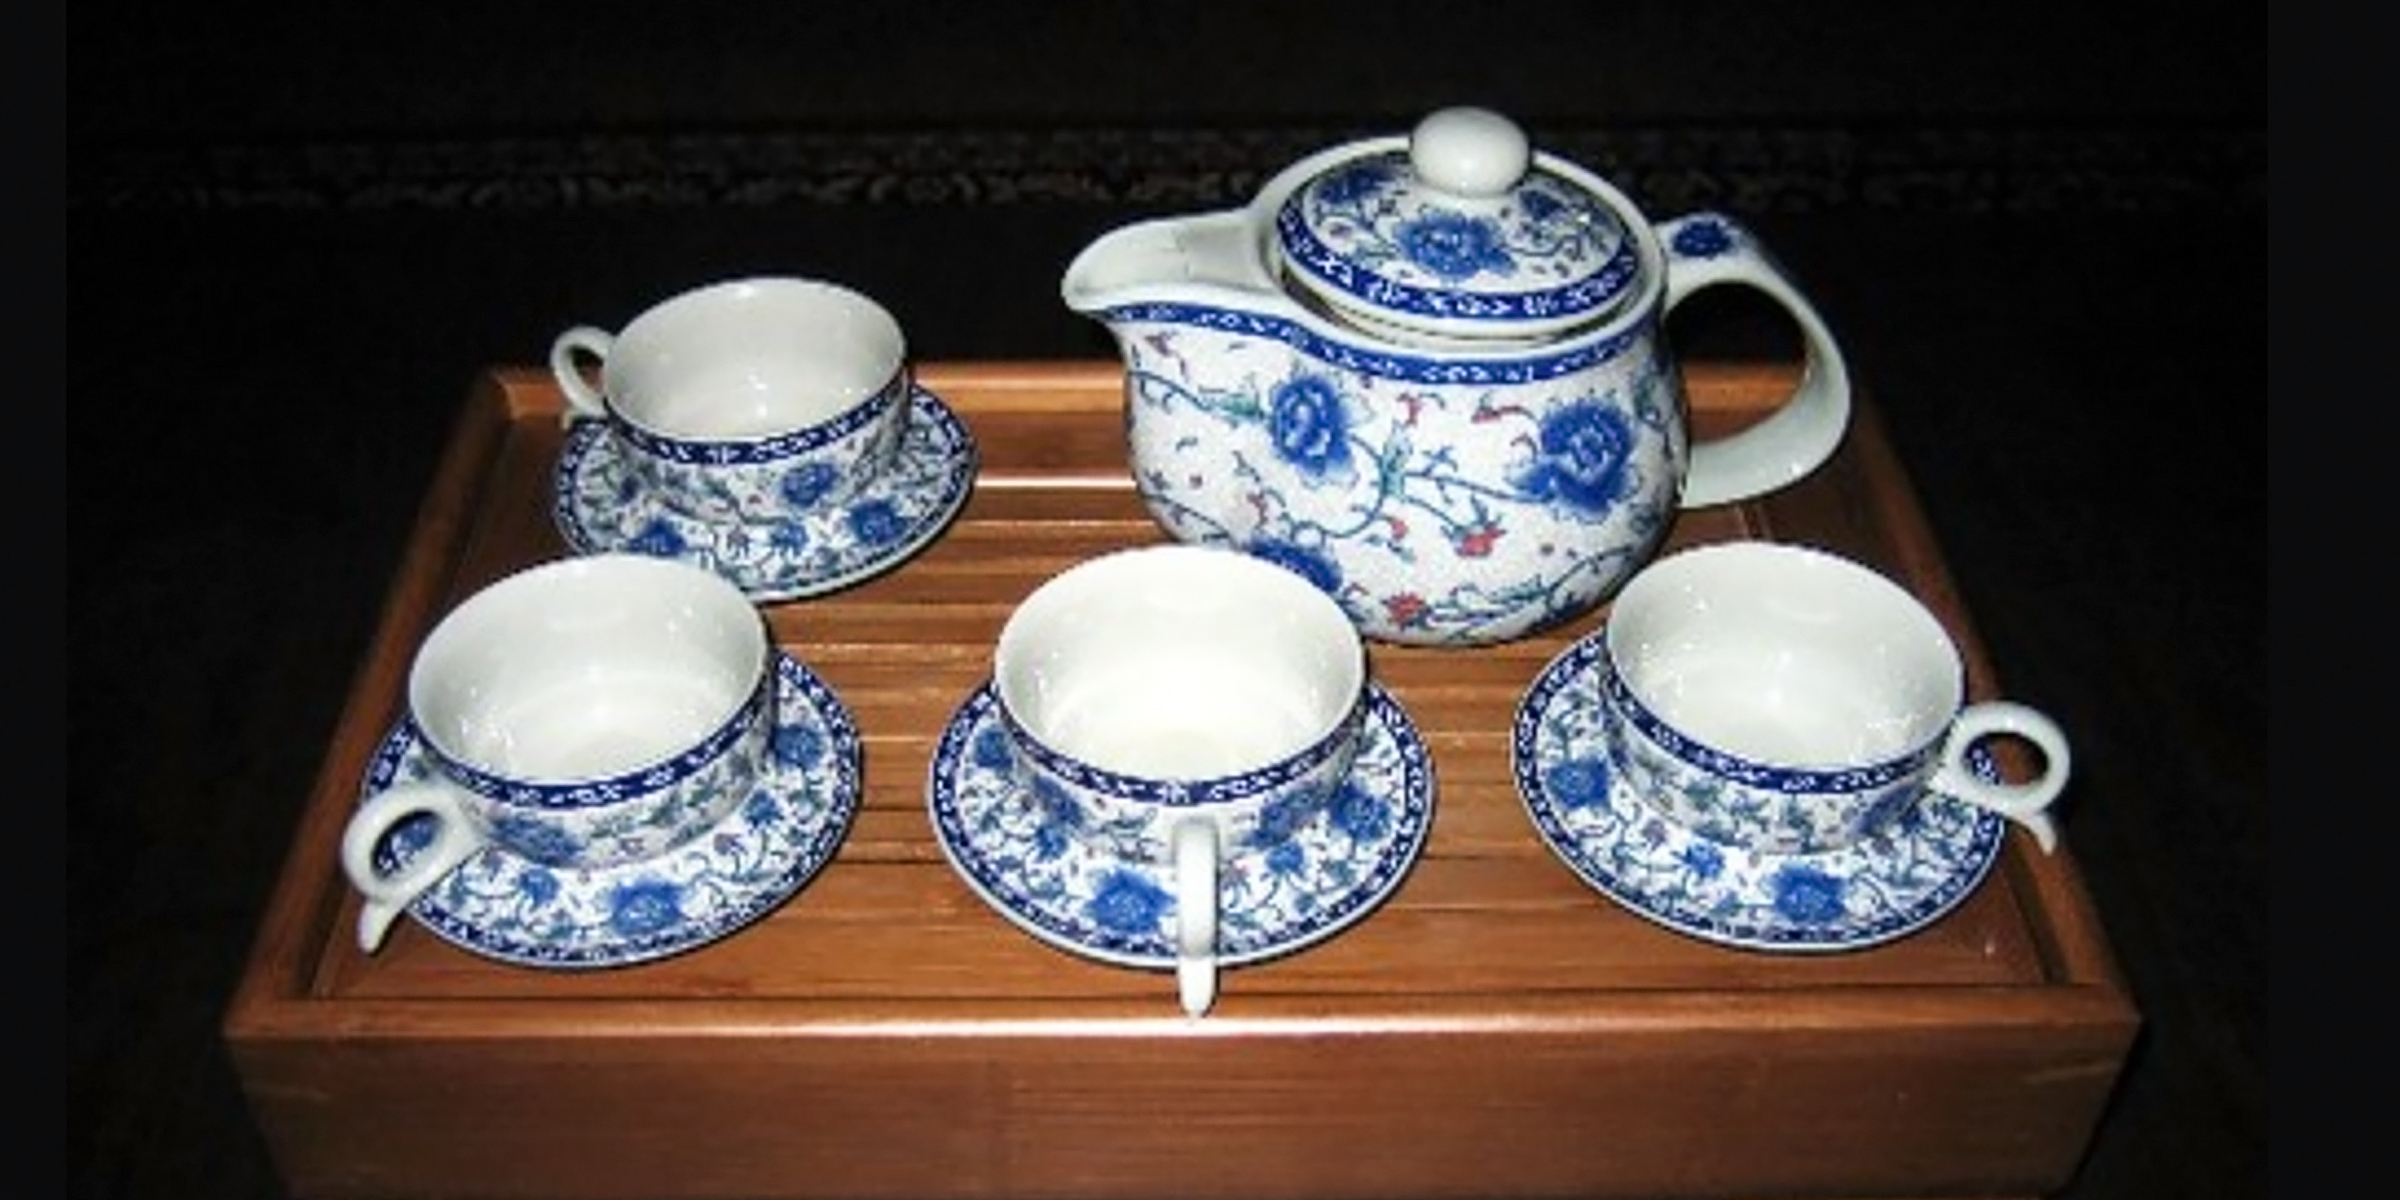 Un juego de té azul y blanco | Foto: Flickr.com/Prince Roy (CC BY 2.0)